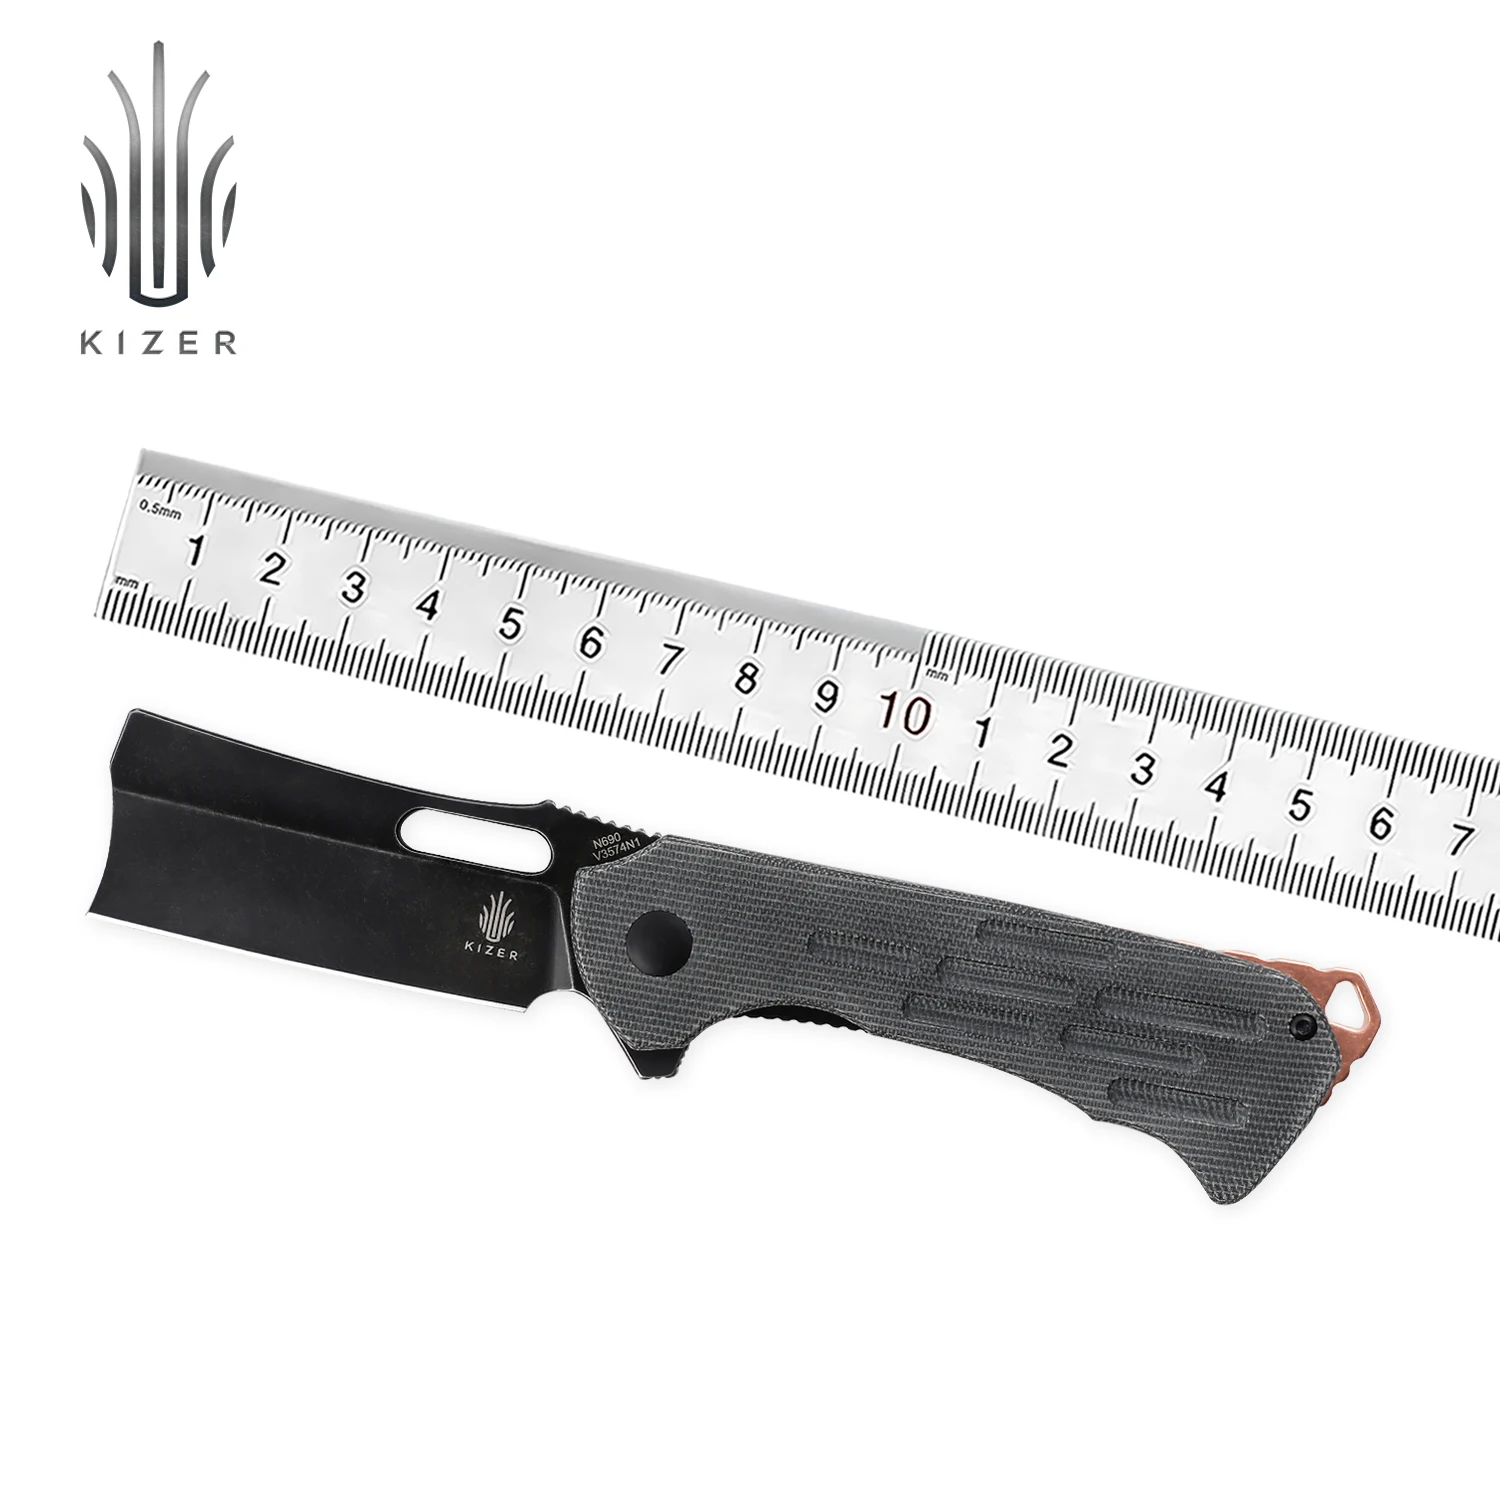 Kizer Hunting Knife Quatch V3574N1 2021 New Micarta Handle & Black Stonewashed Blade Knife with Copper Backspacer